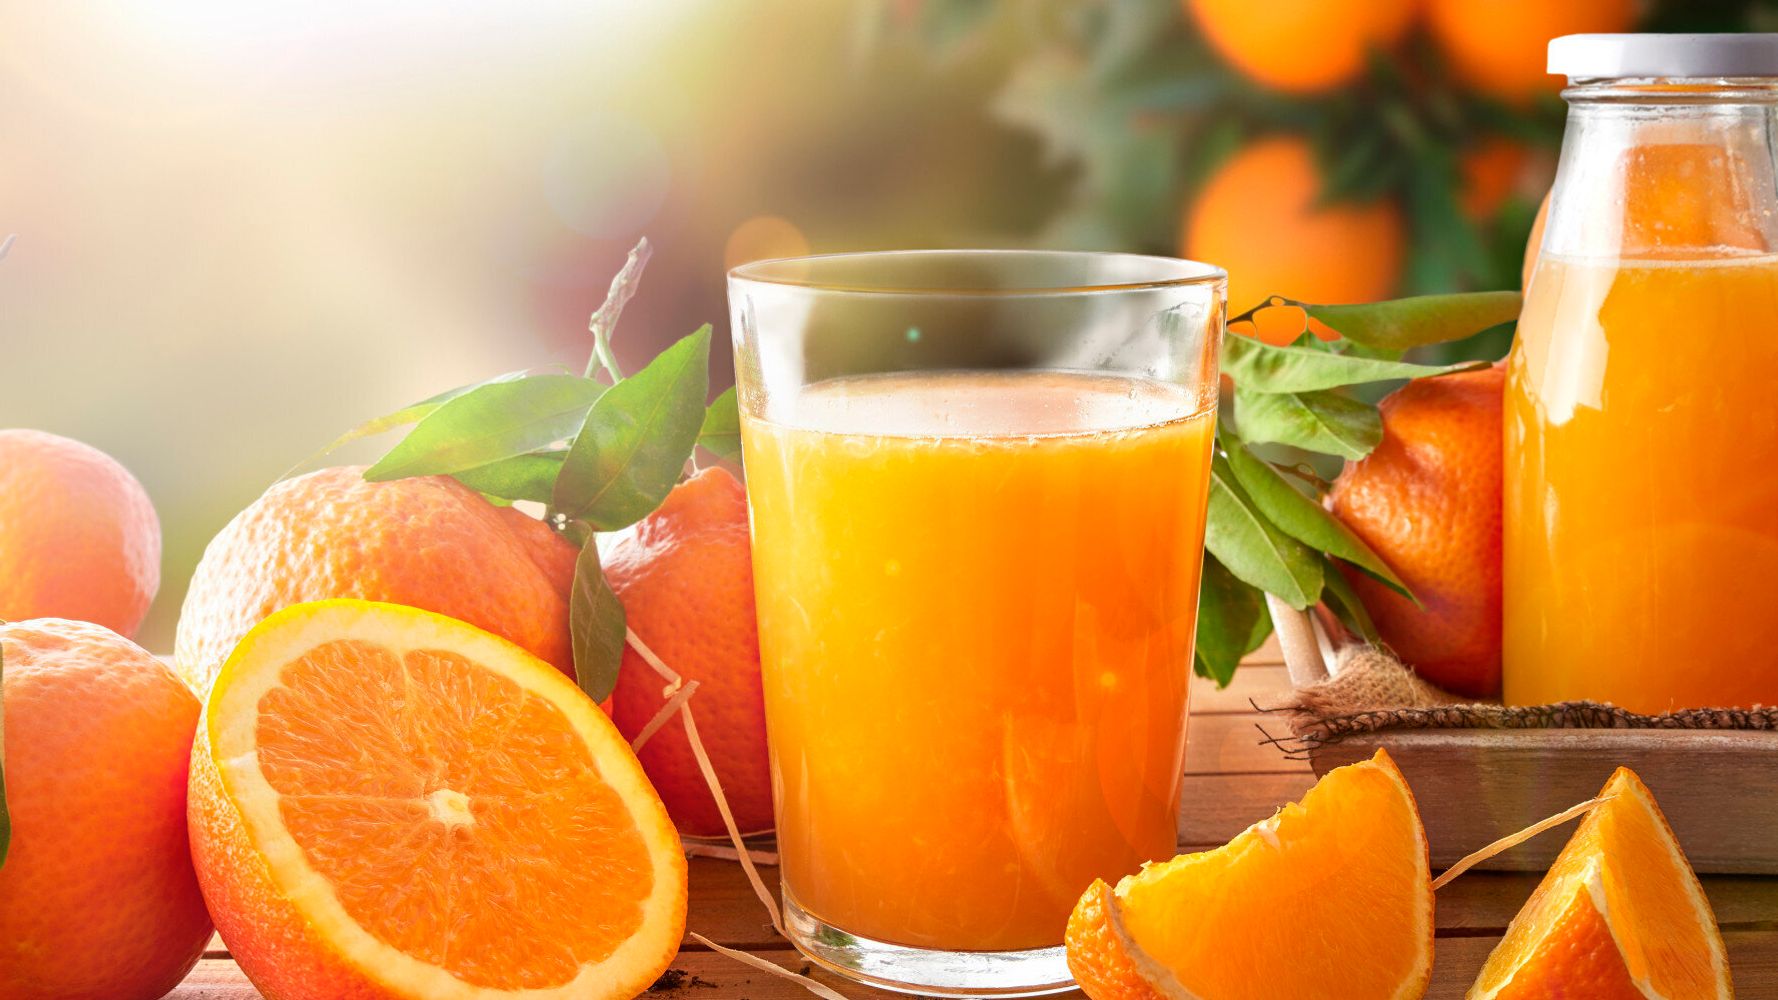 Ποια είναι η σωστή ώρα για να πιούμε έναν χυμό πορτοκάλι